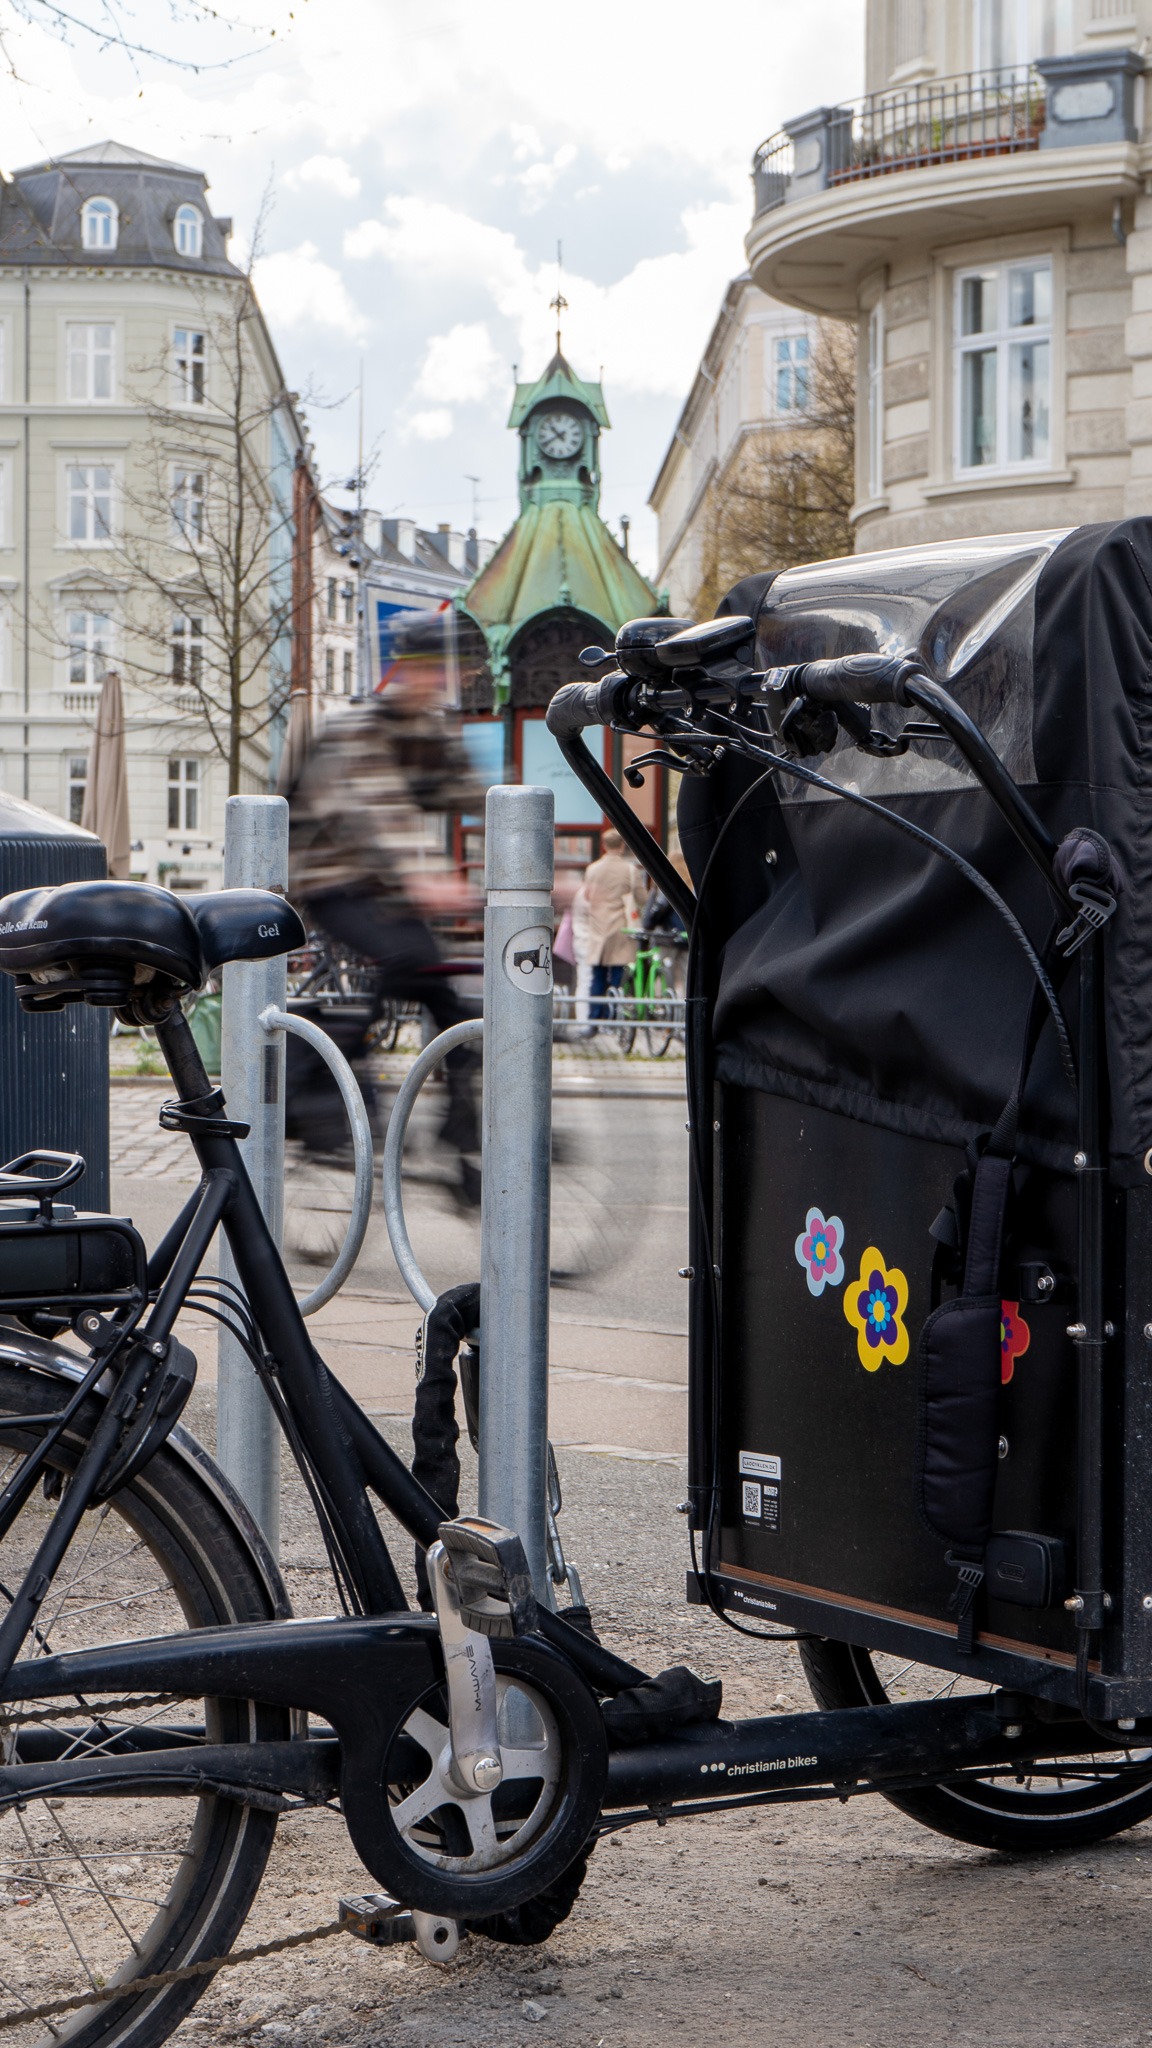 Aparecen los primeros puestos de estacionamiento de bicicletas en Copenhague